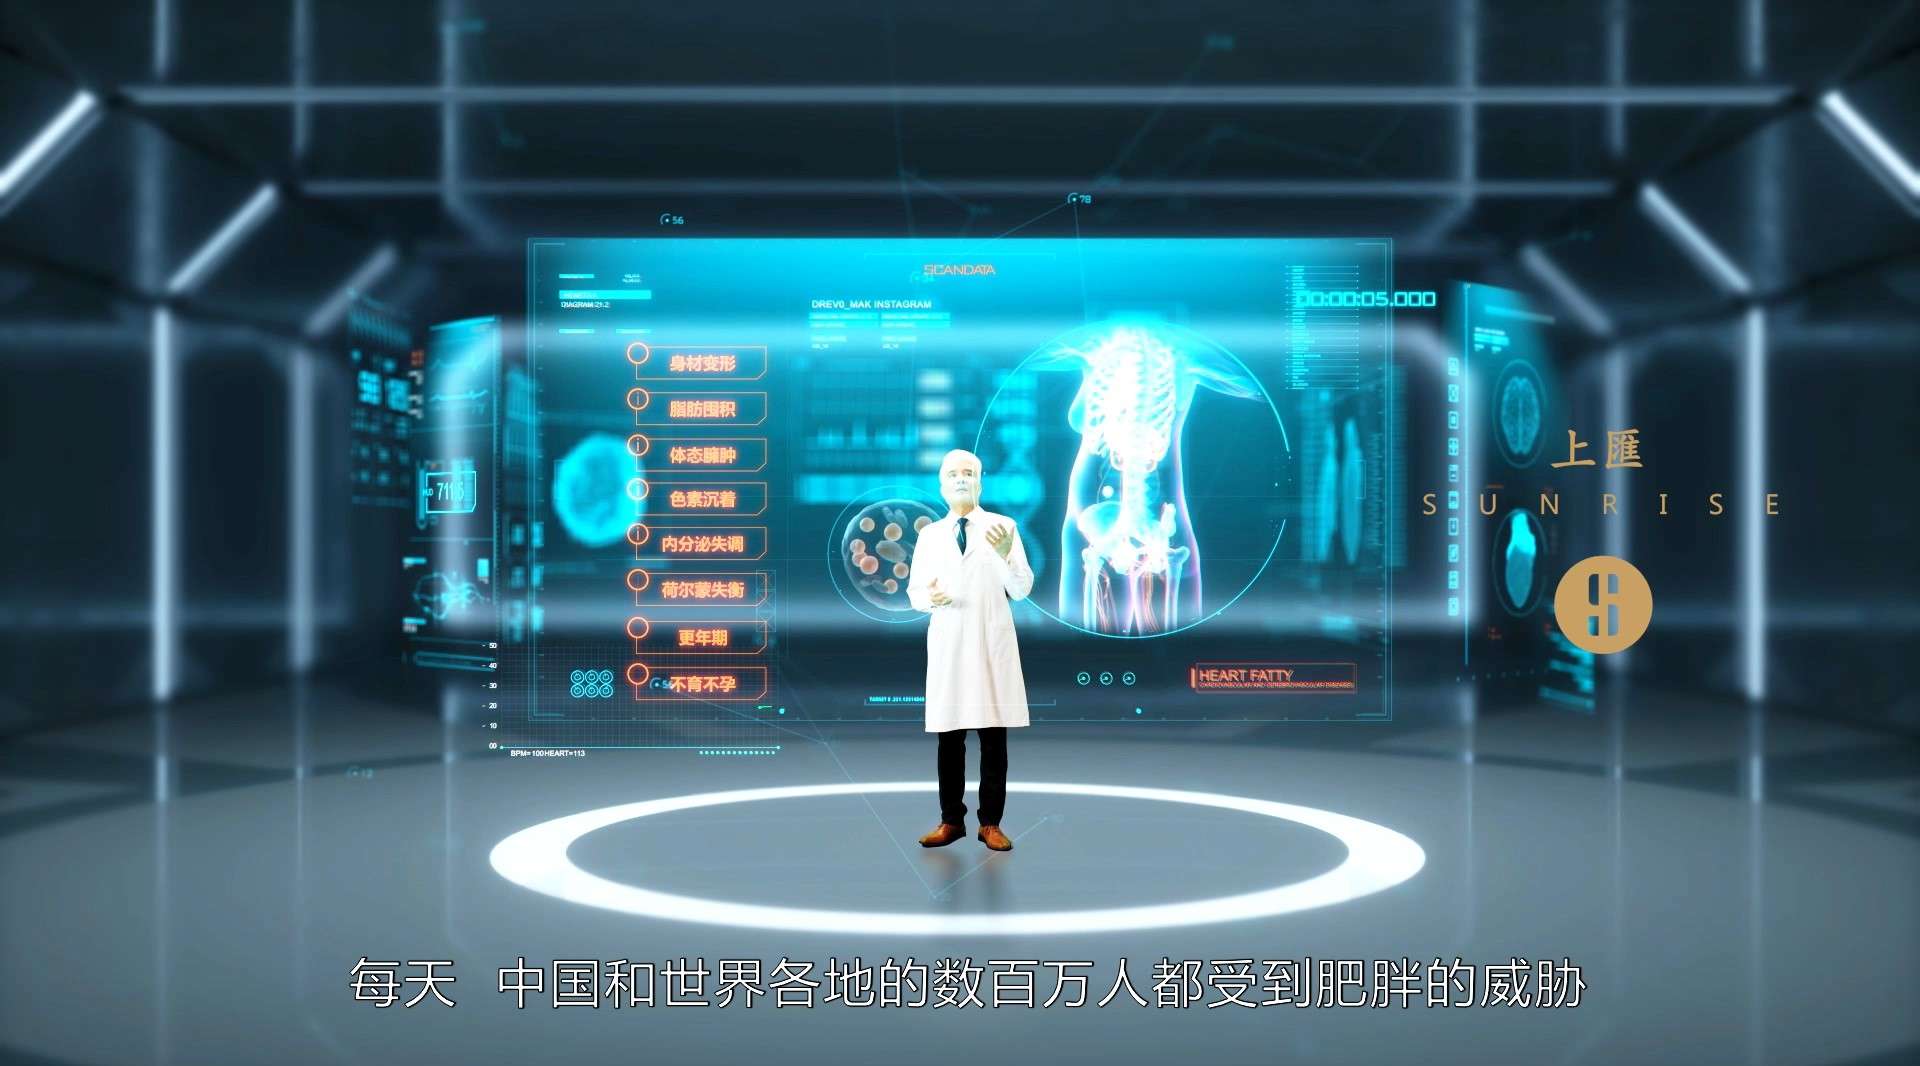 上海荣誉国际医疗